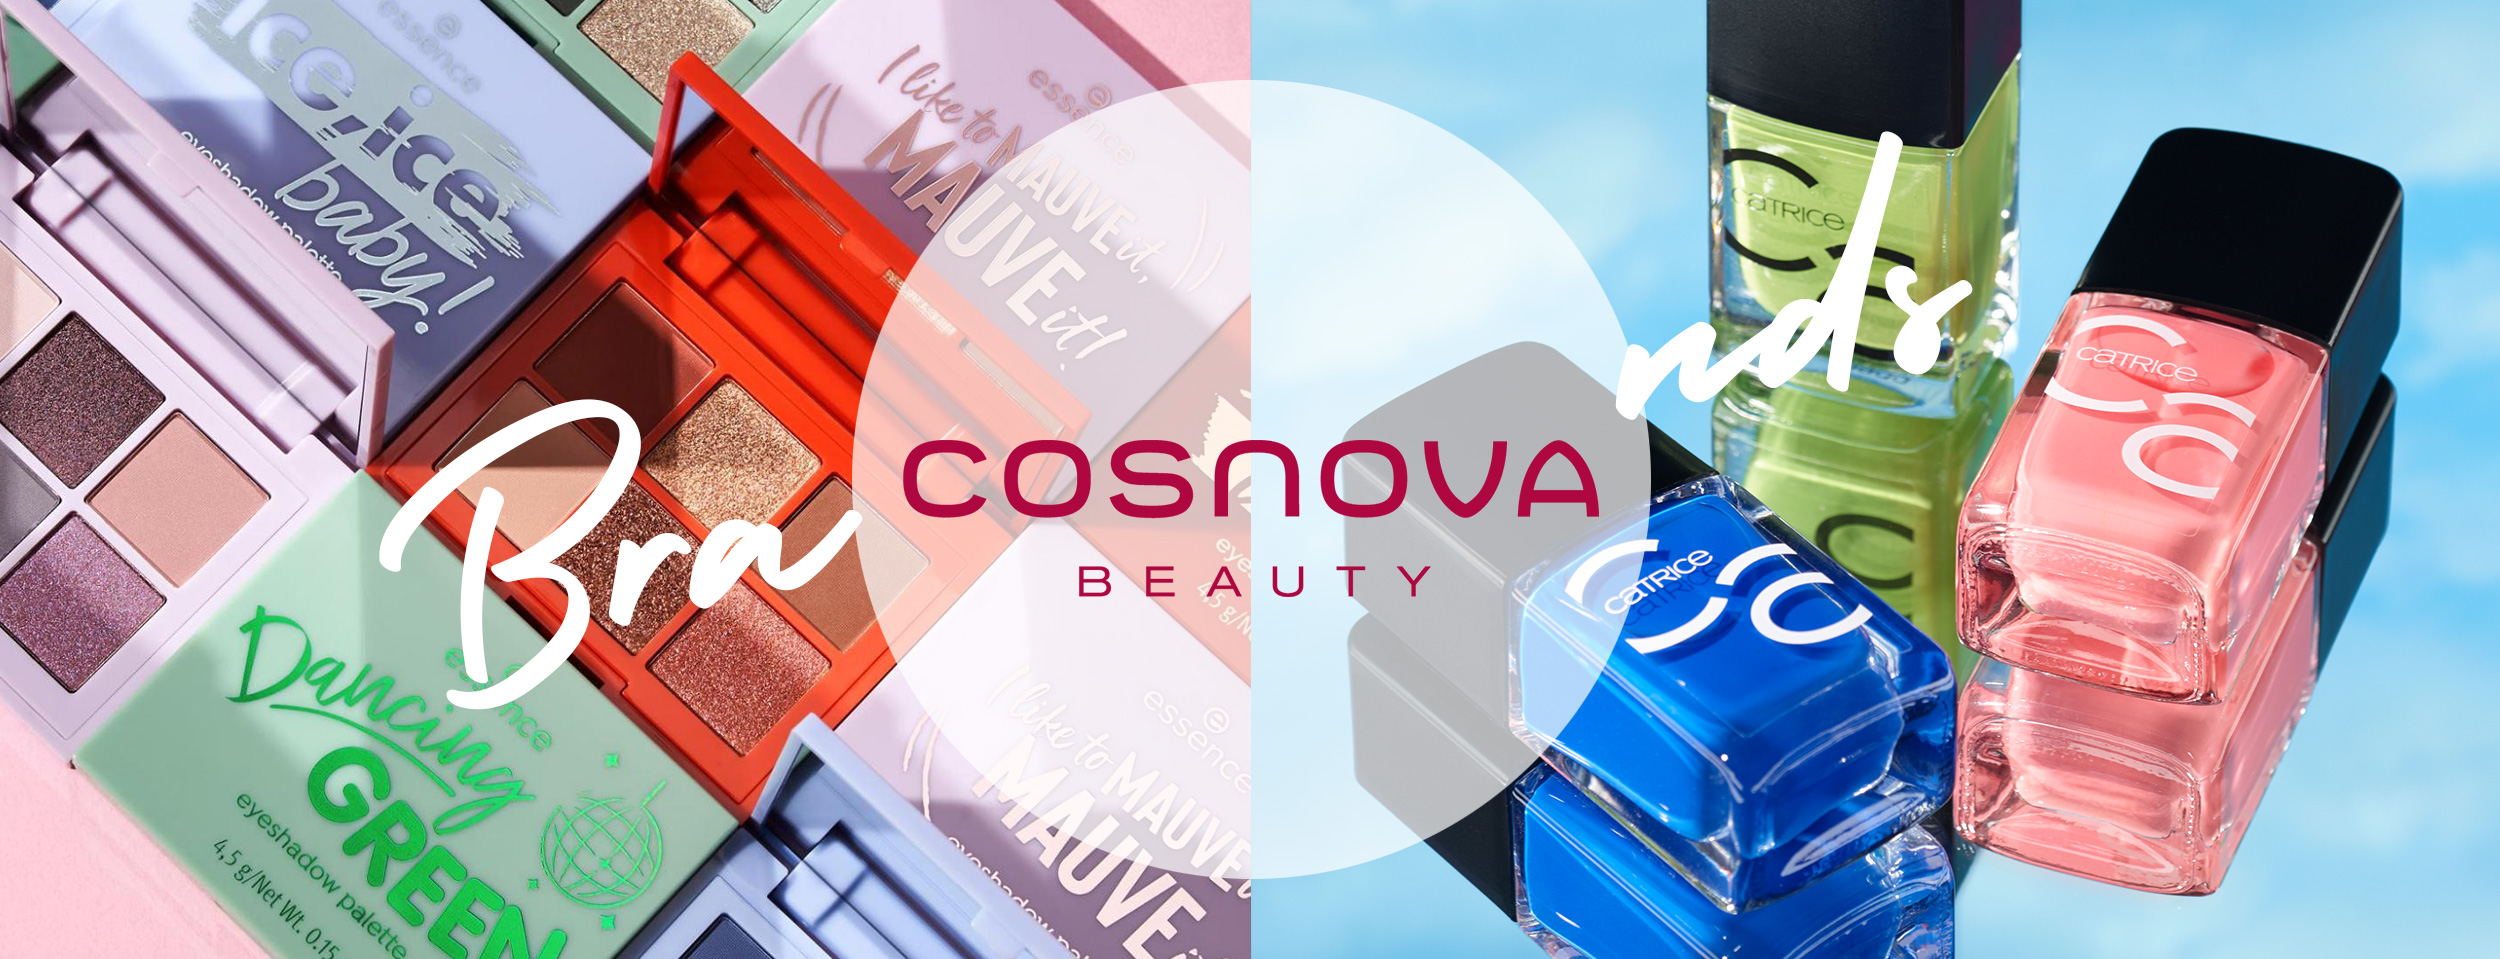 cosnova brands